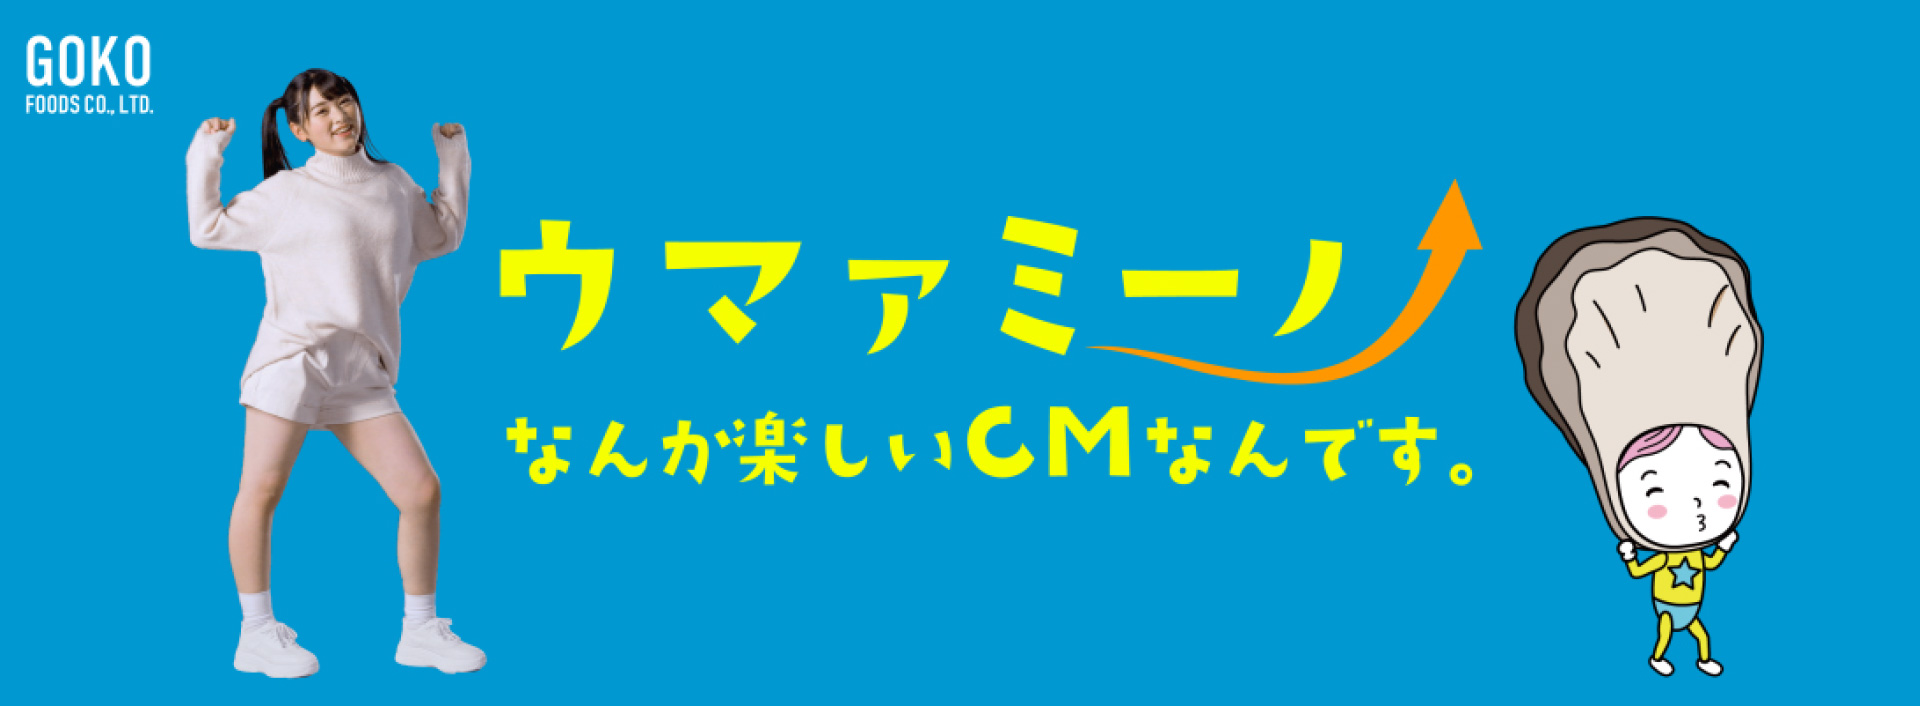 五光食品株式會社“Umami-no”